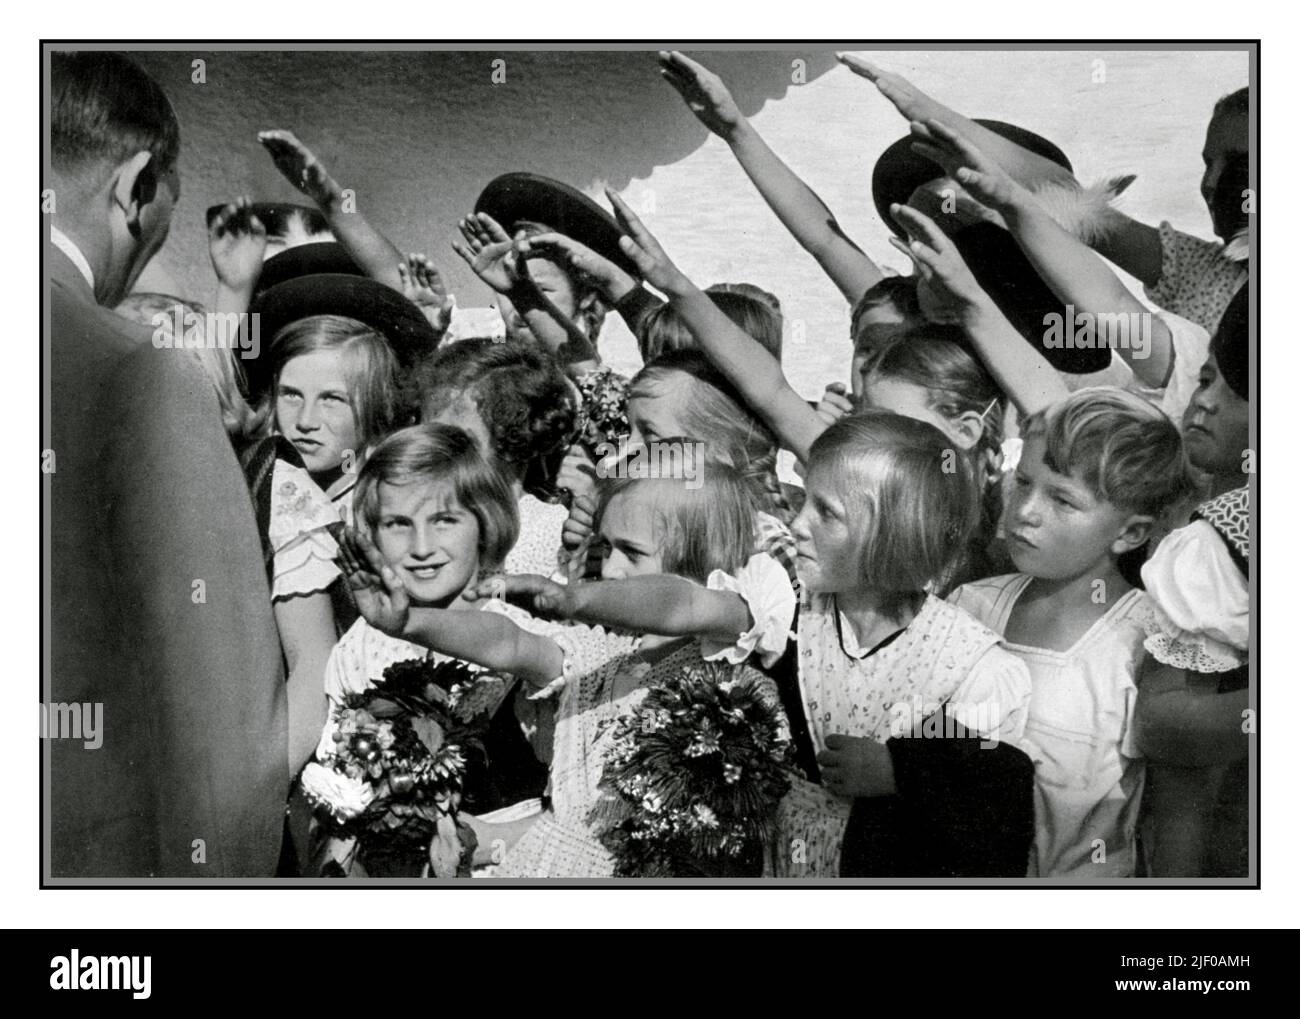 Adolf Hitler 1930s avec un groupe de jeunes blonds heureux aryan filles et garçons enfants en bas âge avec des fleurs, qui sont souriants et saluent avec le salut nazi Heil Hitler. Allemagne nazie 1936 Banque D'Images